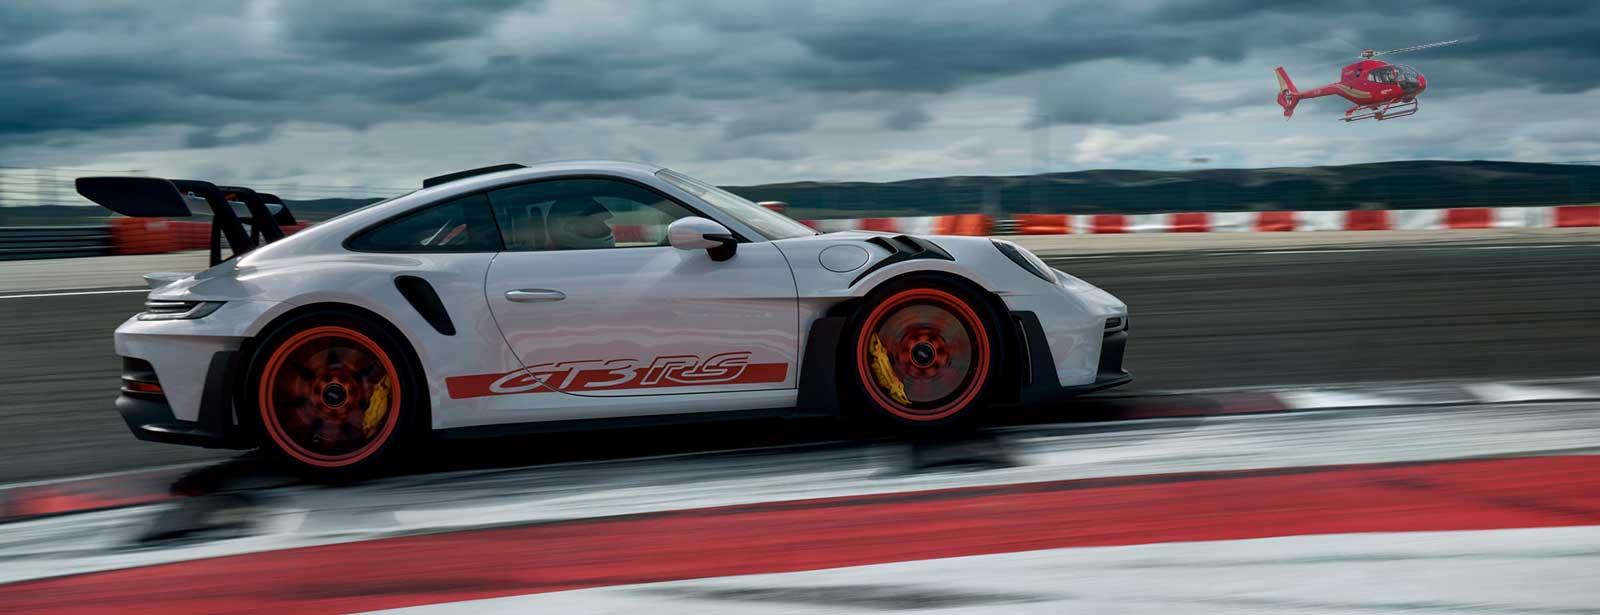 Porsche High Flier Grand Prix Experience